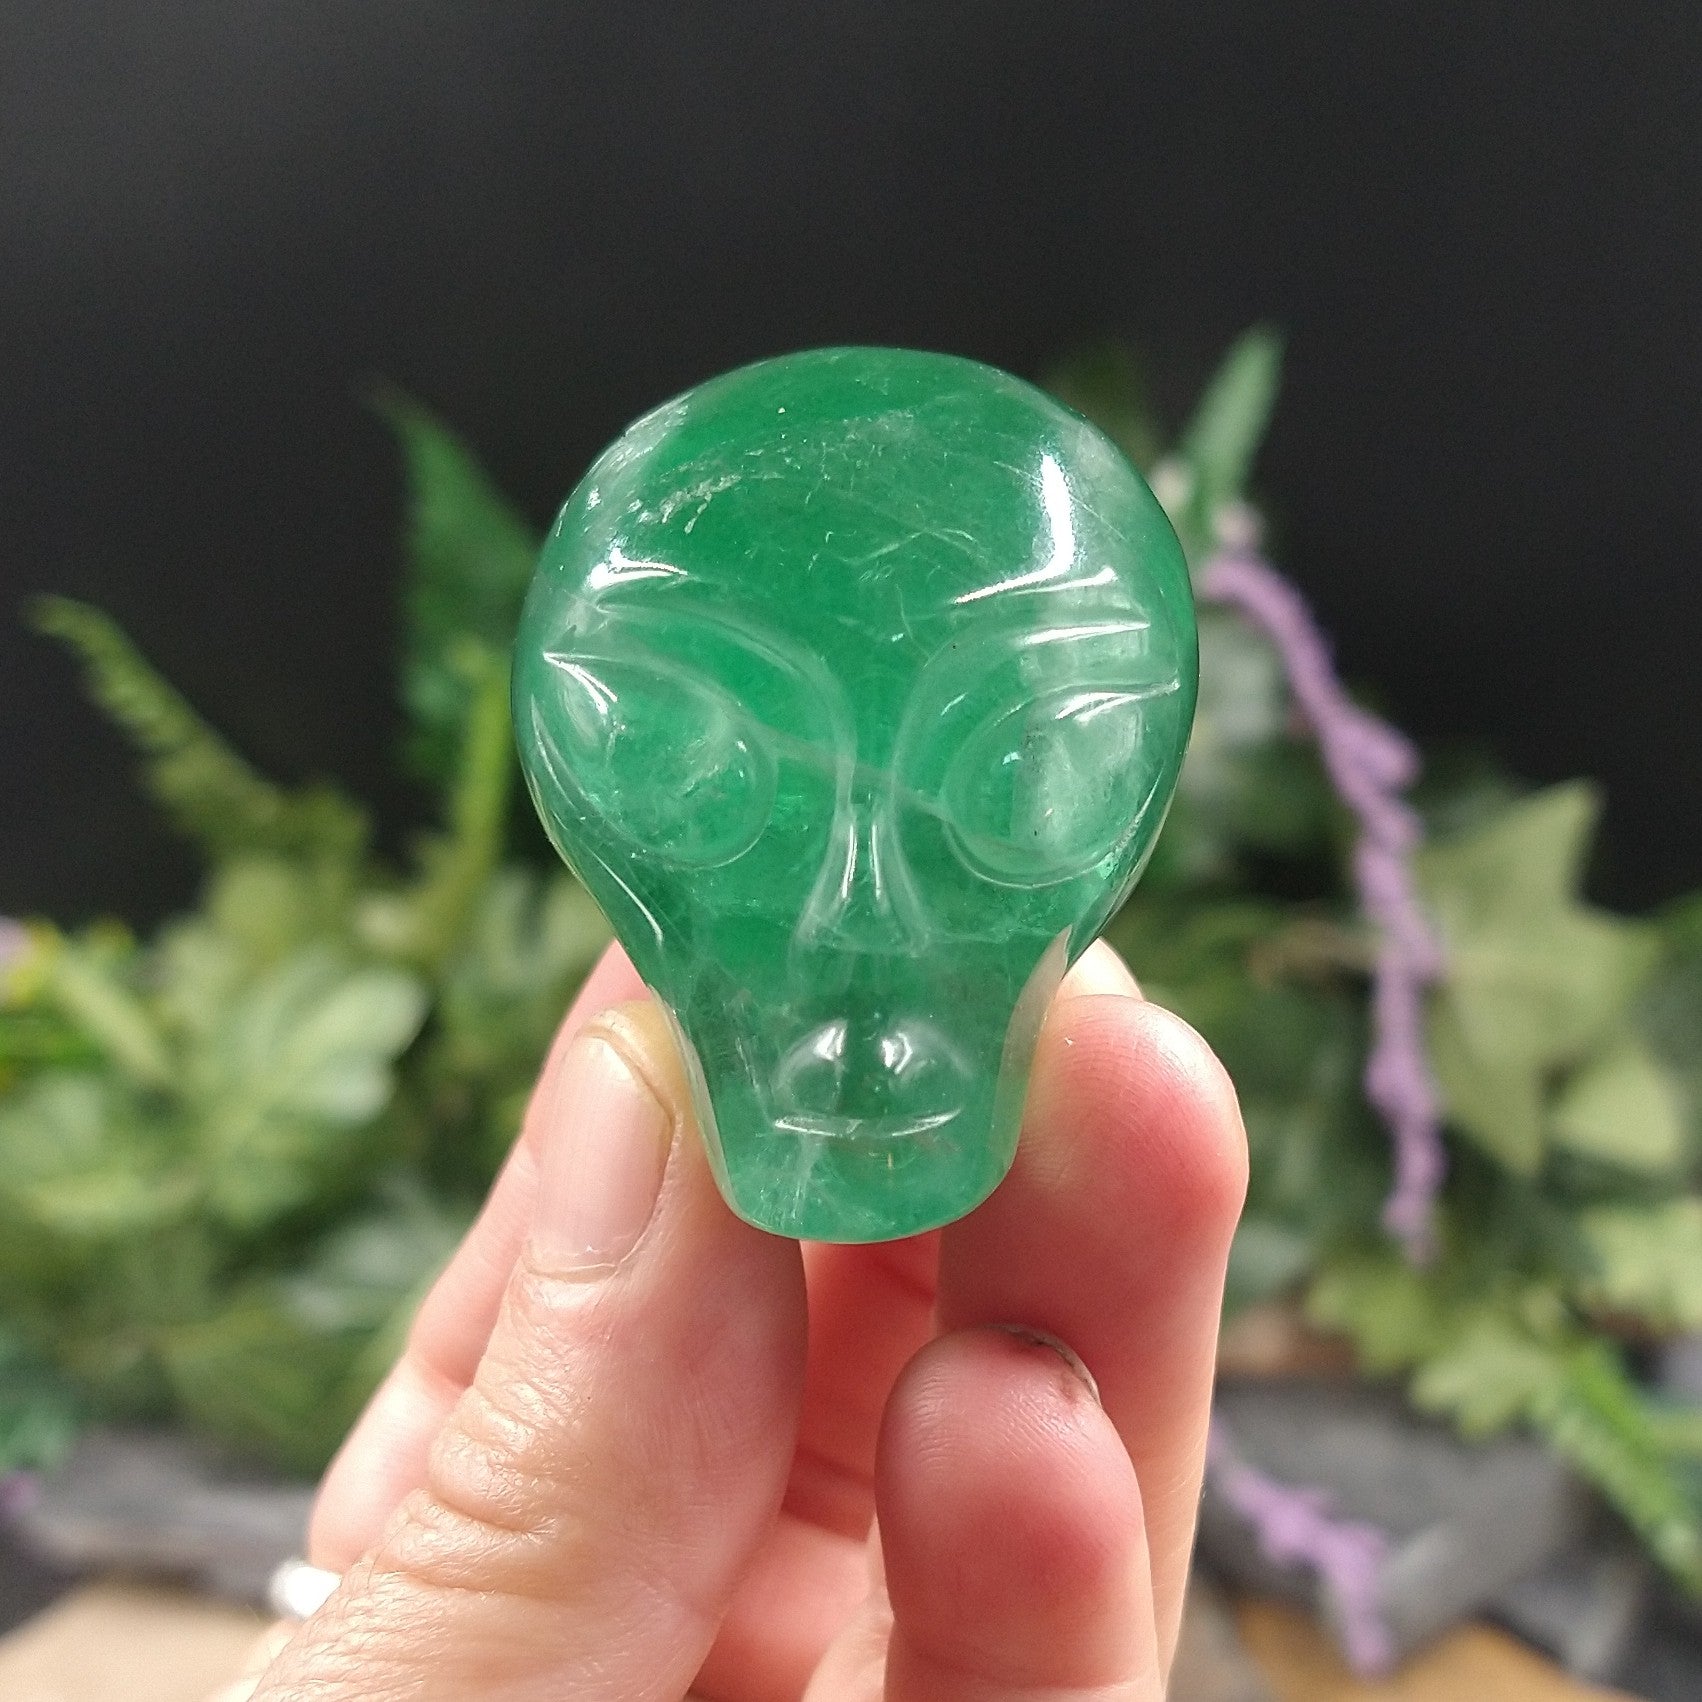 FL-206 Green Fluorite Alien Head!